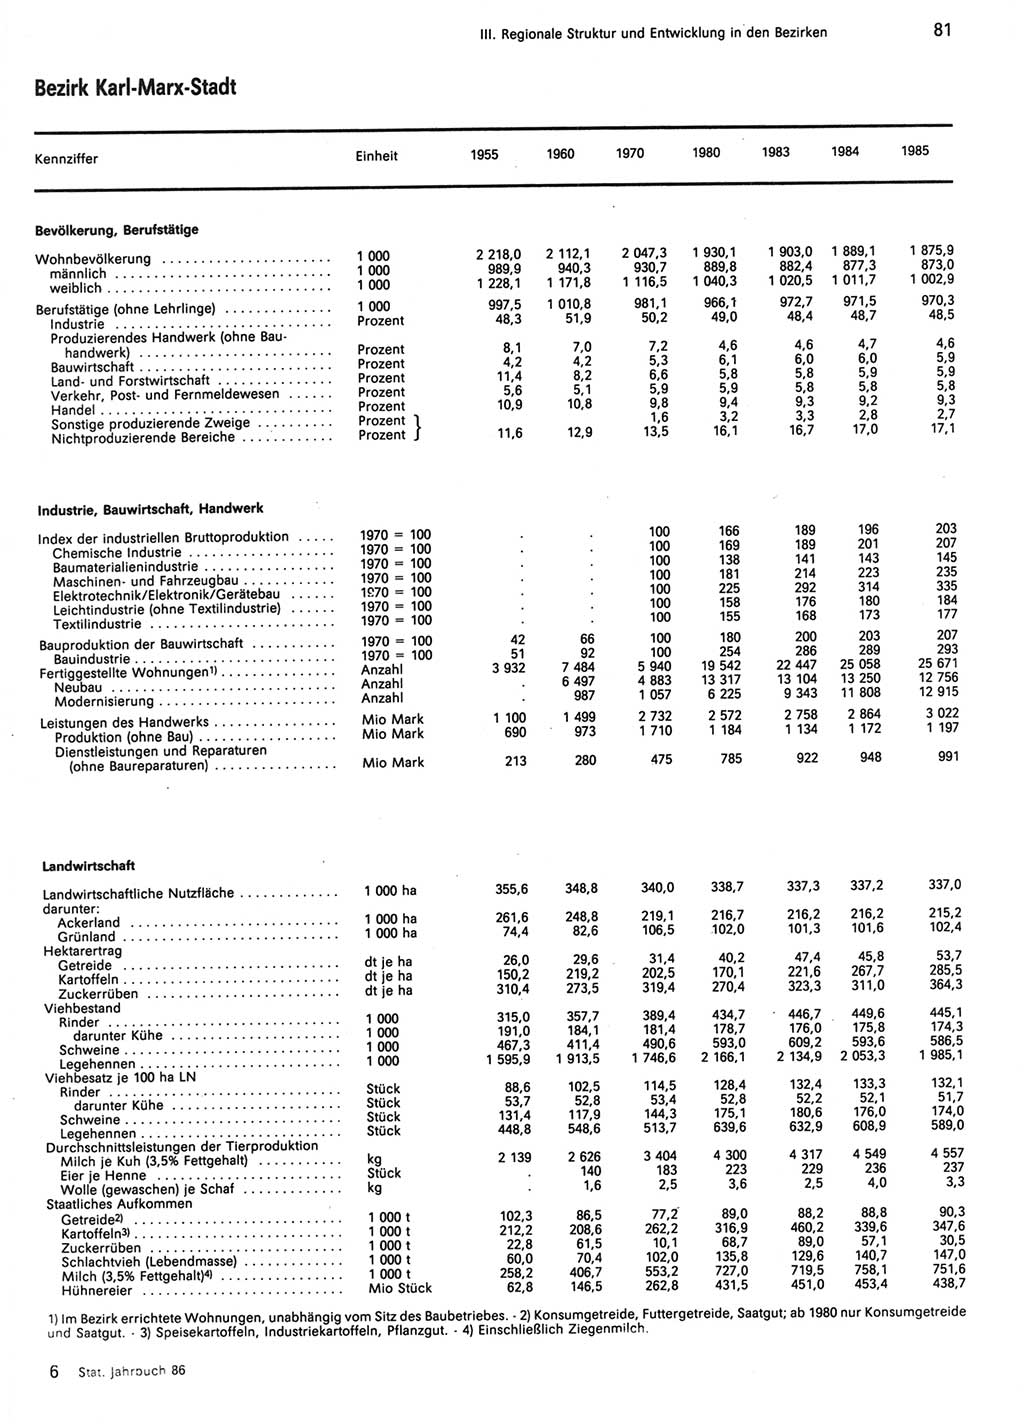 Statistisches Jahrbuch der Deutschen Demokratischen Republik (DDR) 1986, Seite 81 (Stat. Jb. DDR 1986, S. 81)